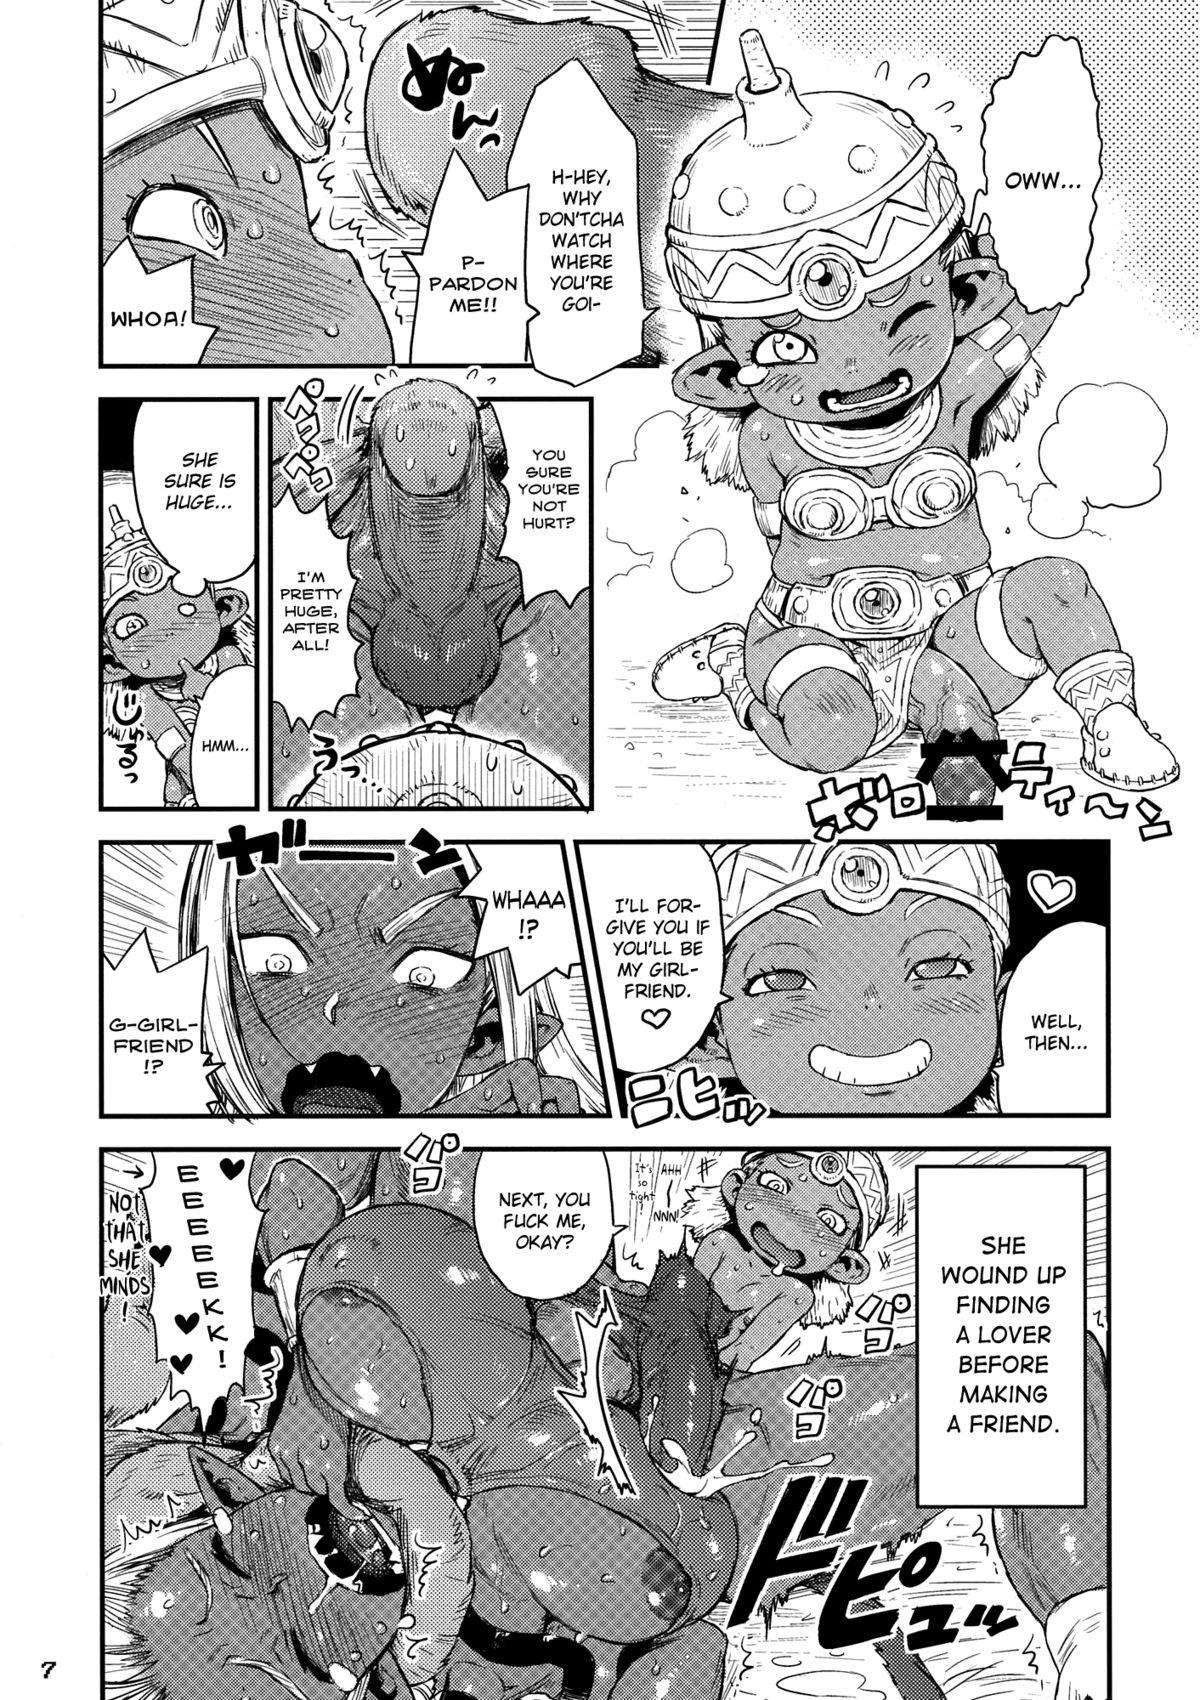 Lez Manya & Ogre FPS β - Dragon quest x Vadia - Page 7